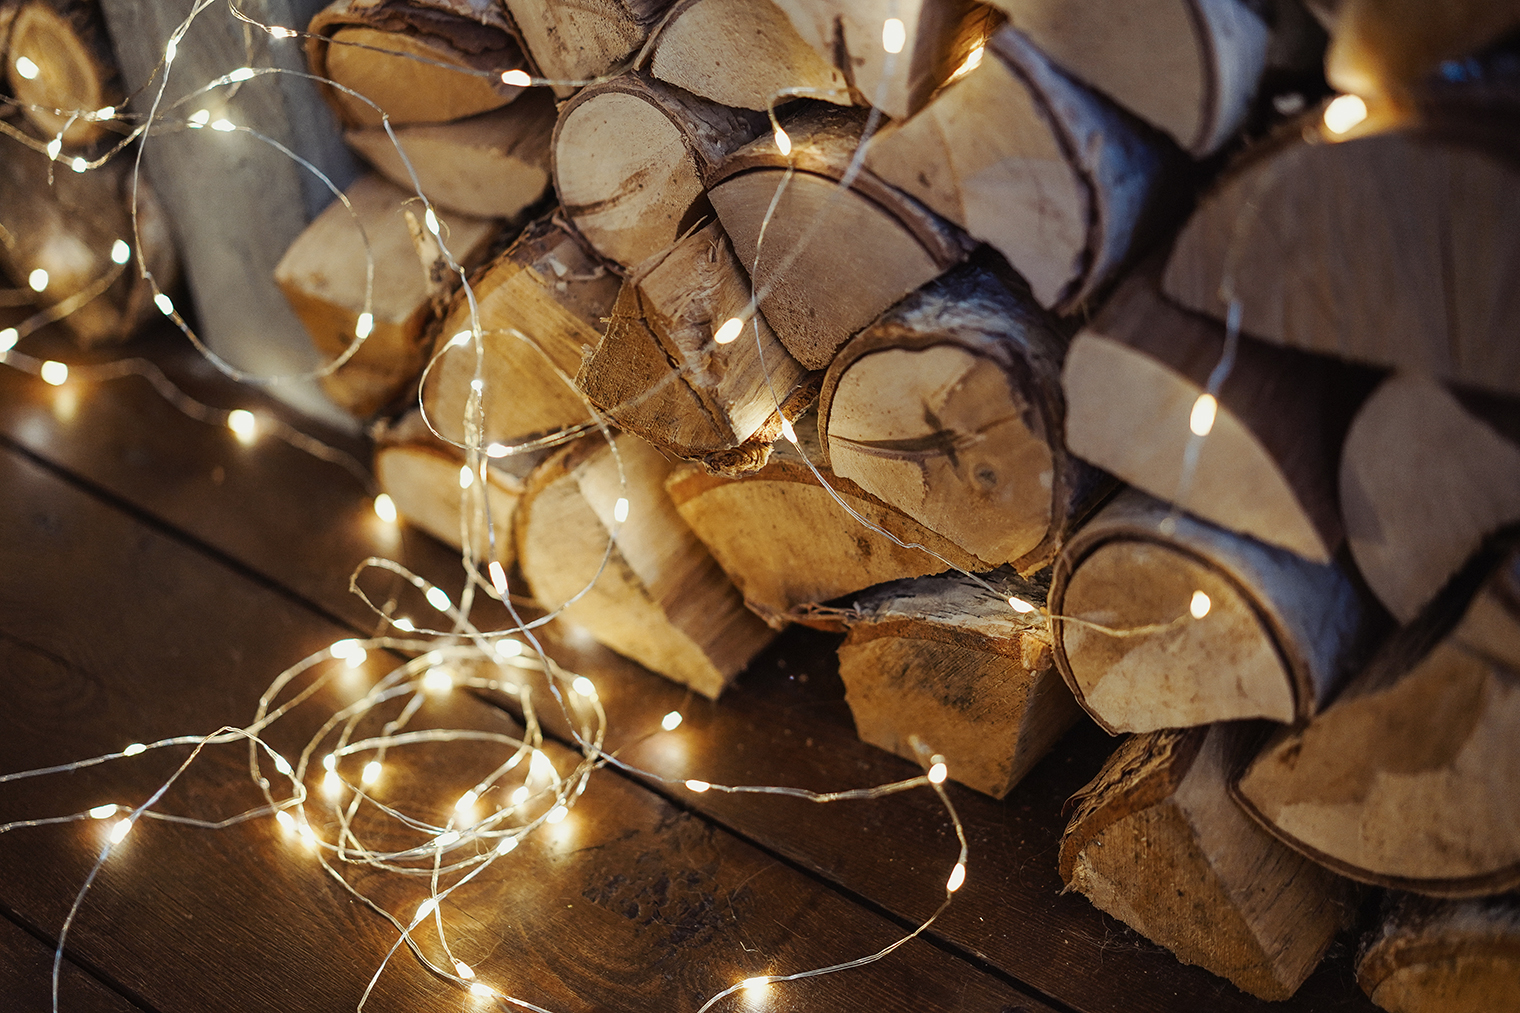 Гирляндой «Роса» можно подсветить отдельные элементы декора, например стопку дров, расположенных под навесом. Фотография: Vesta Gordes / Shutterstock